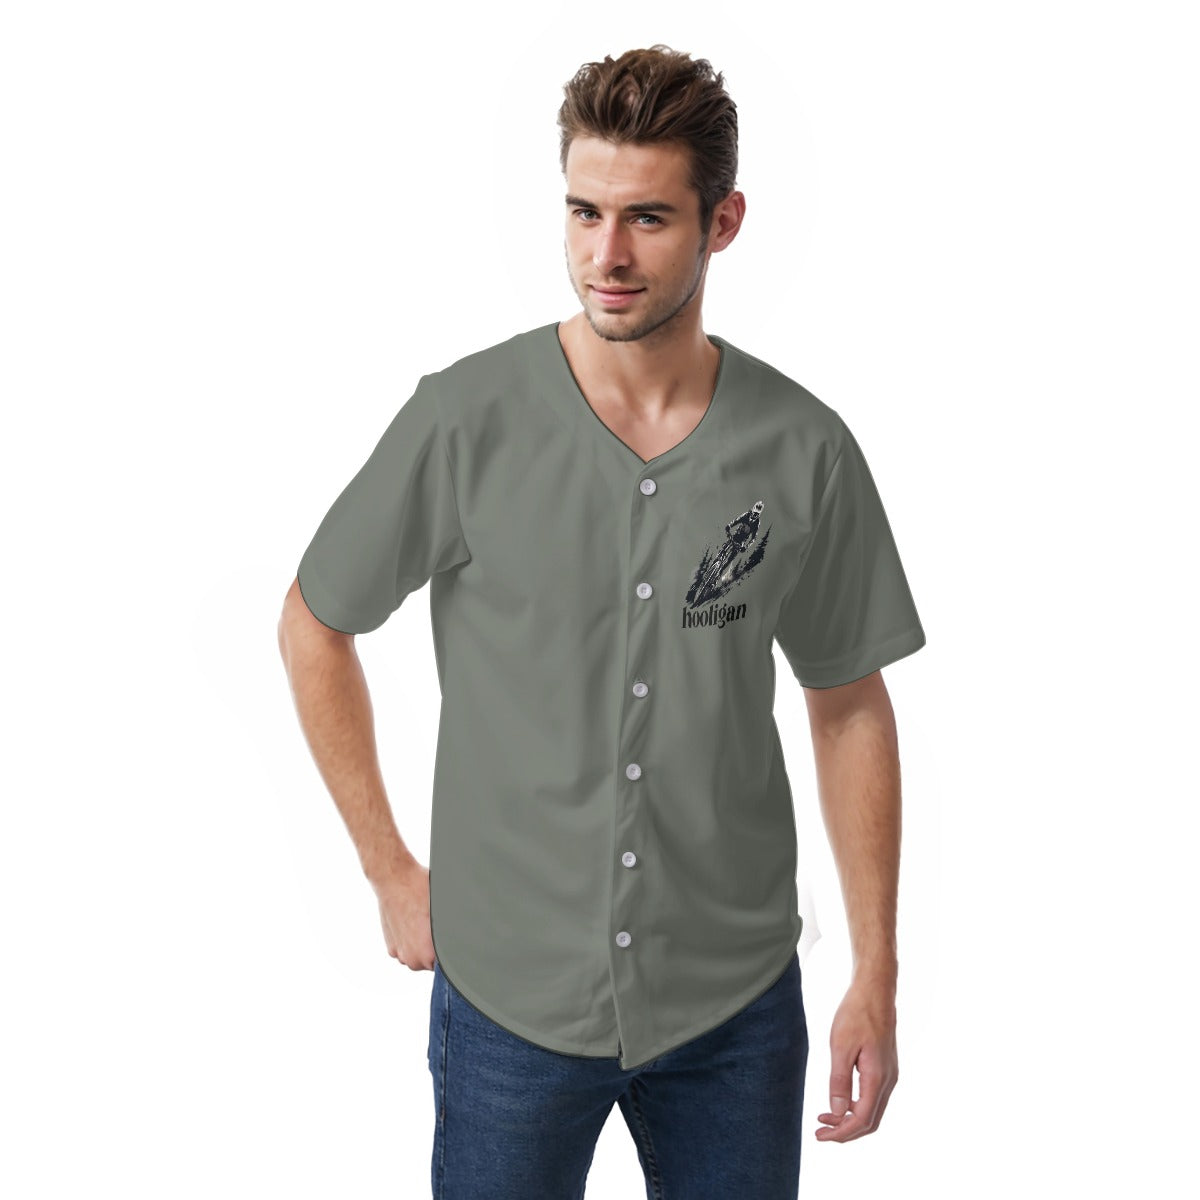 All-Over Print Men's Short Sleeve Baseball Jersey|220GM SKPO03